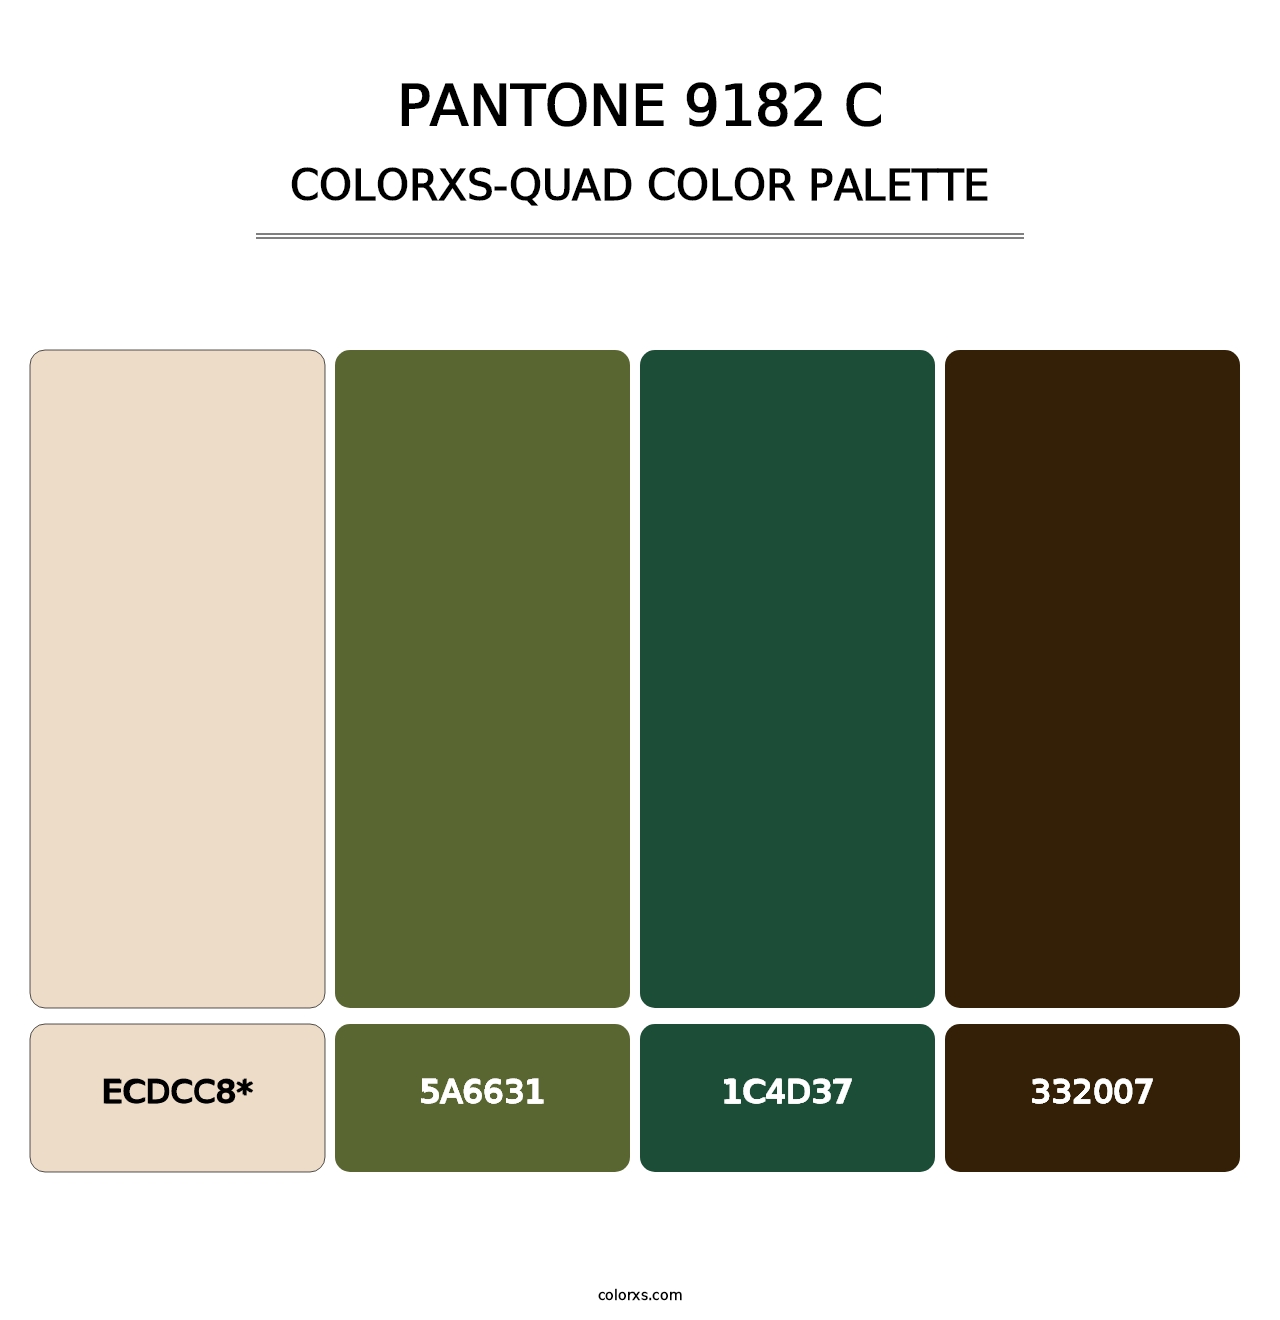 PANTONE 9182 C - Colorxs Quad Palette